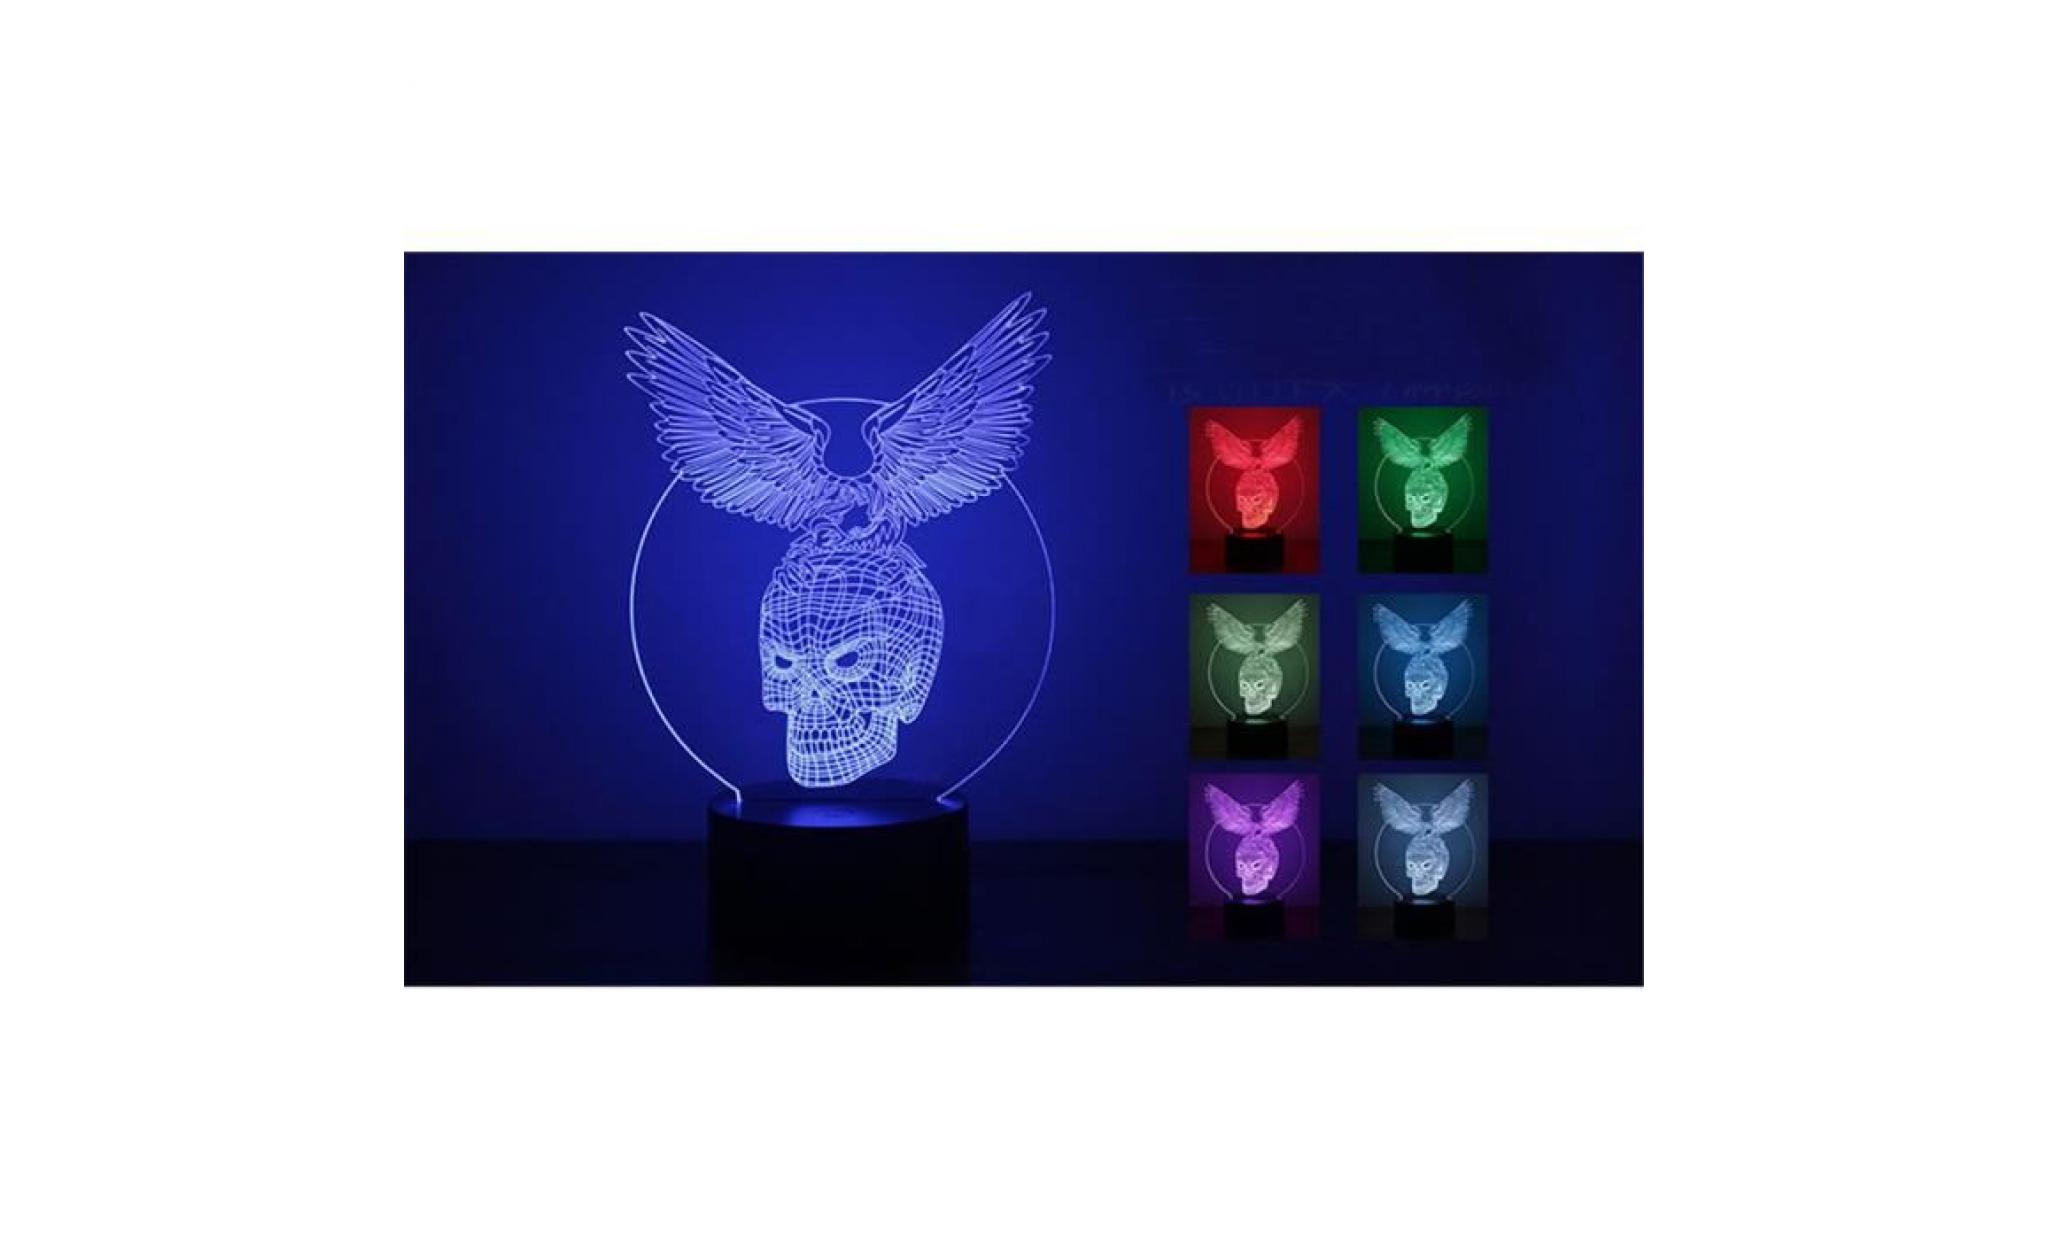 eagle skull 3d led night light lampes illusion optique 3d 7 couleurs pour la maison lumière287 pas cher